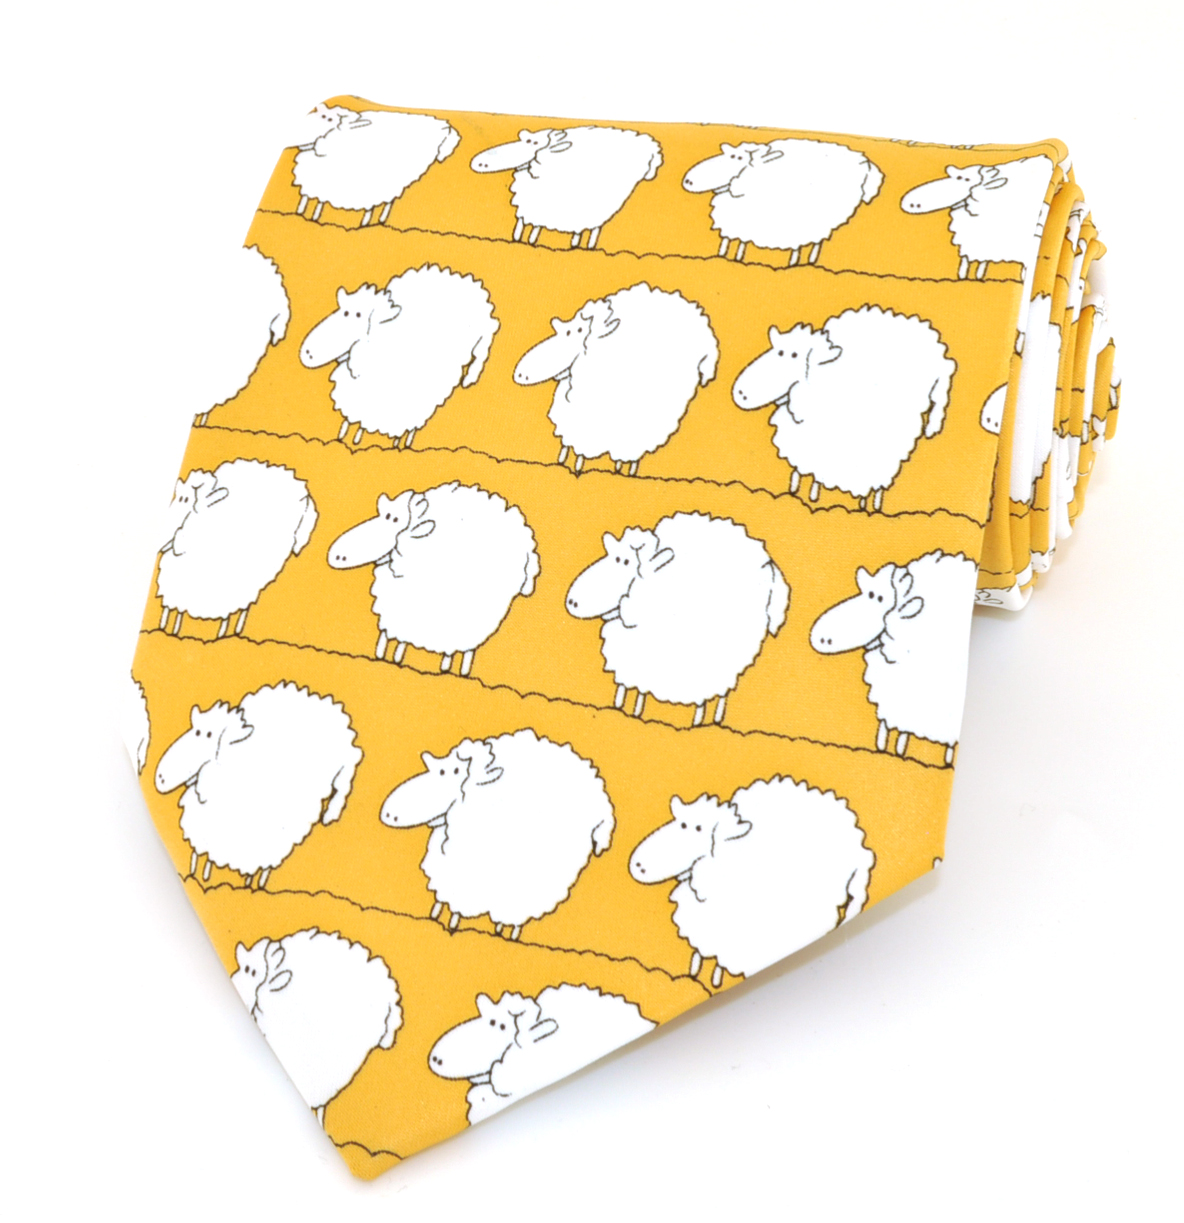 Галстук широкий желтый с овечками описание: Фасон - Классический, Материал - Полиэстер, Цвет - Желтый, Размер - 10 см. х 140 см., Страна производства - Китай.